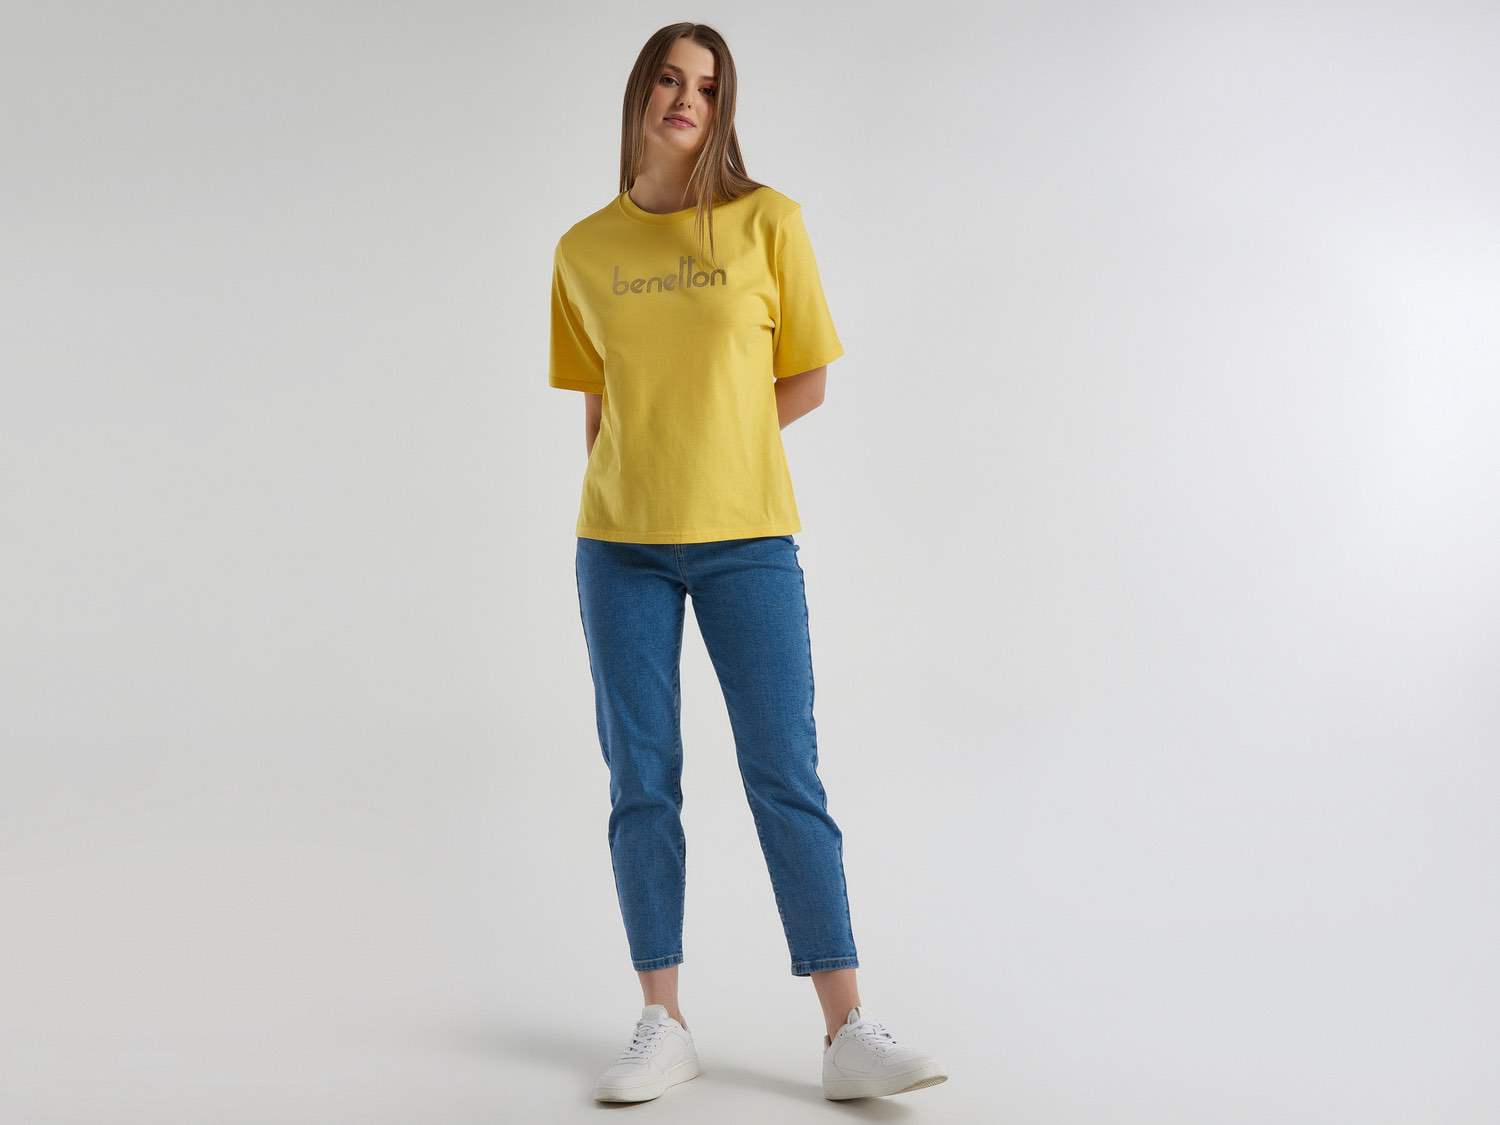 Benetton Kadın Sarı %100 Koton Benetton Yazılı T Shirt. 1